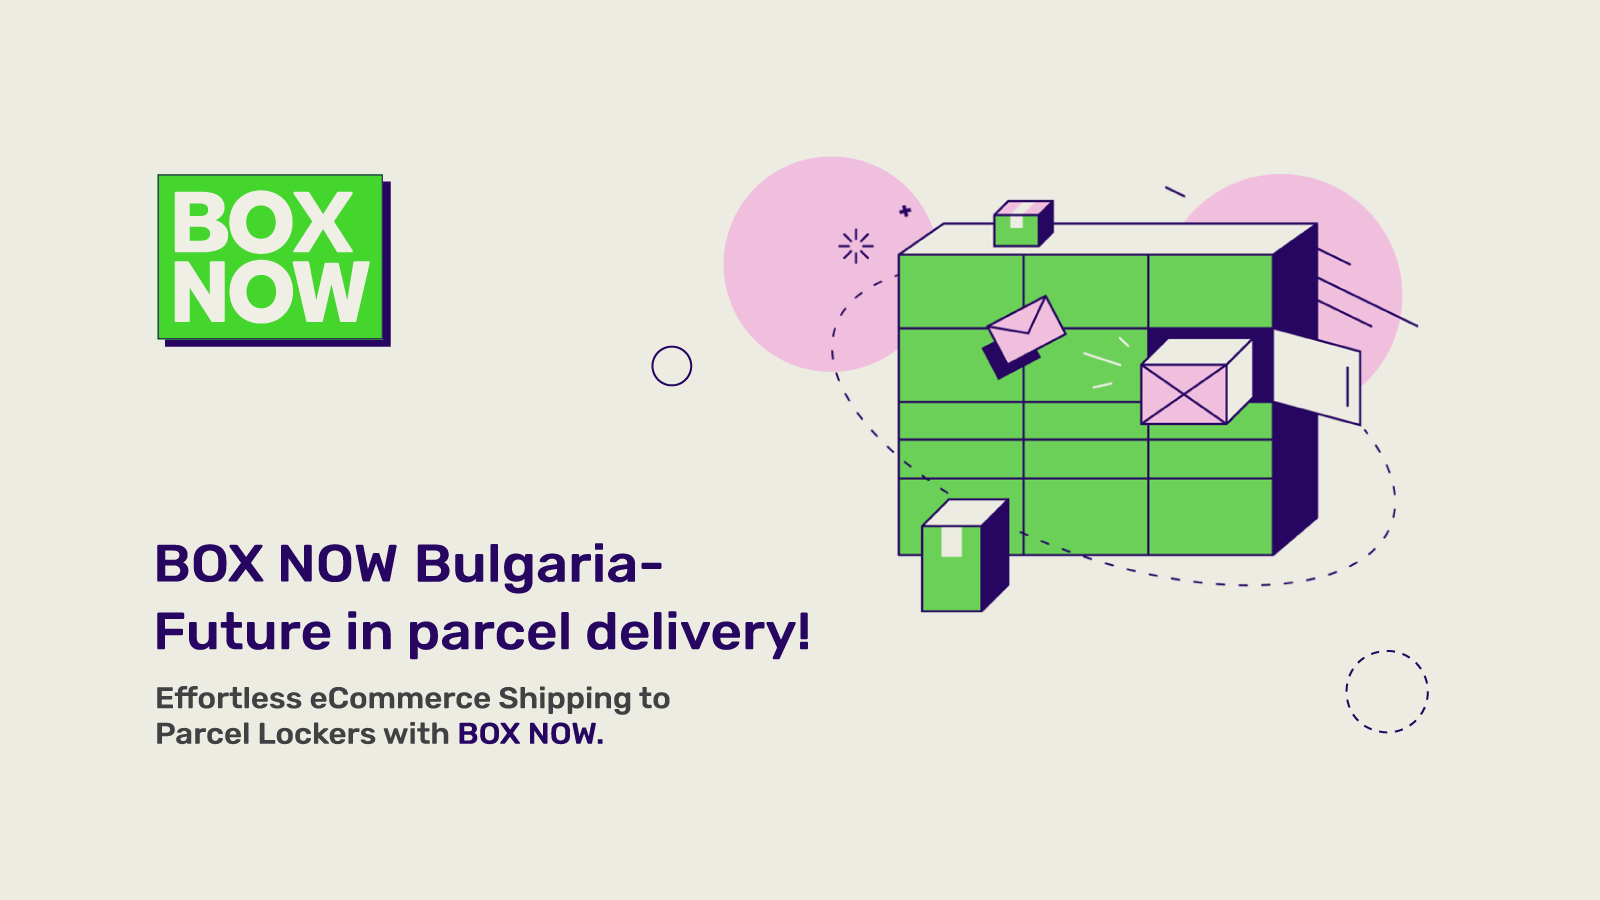 BOX NOW Bulgaria - O futuro na entrega de encomendas!